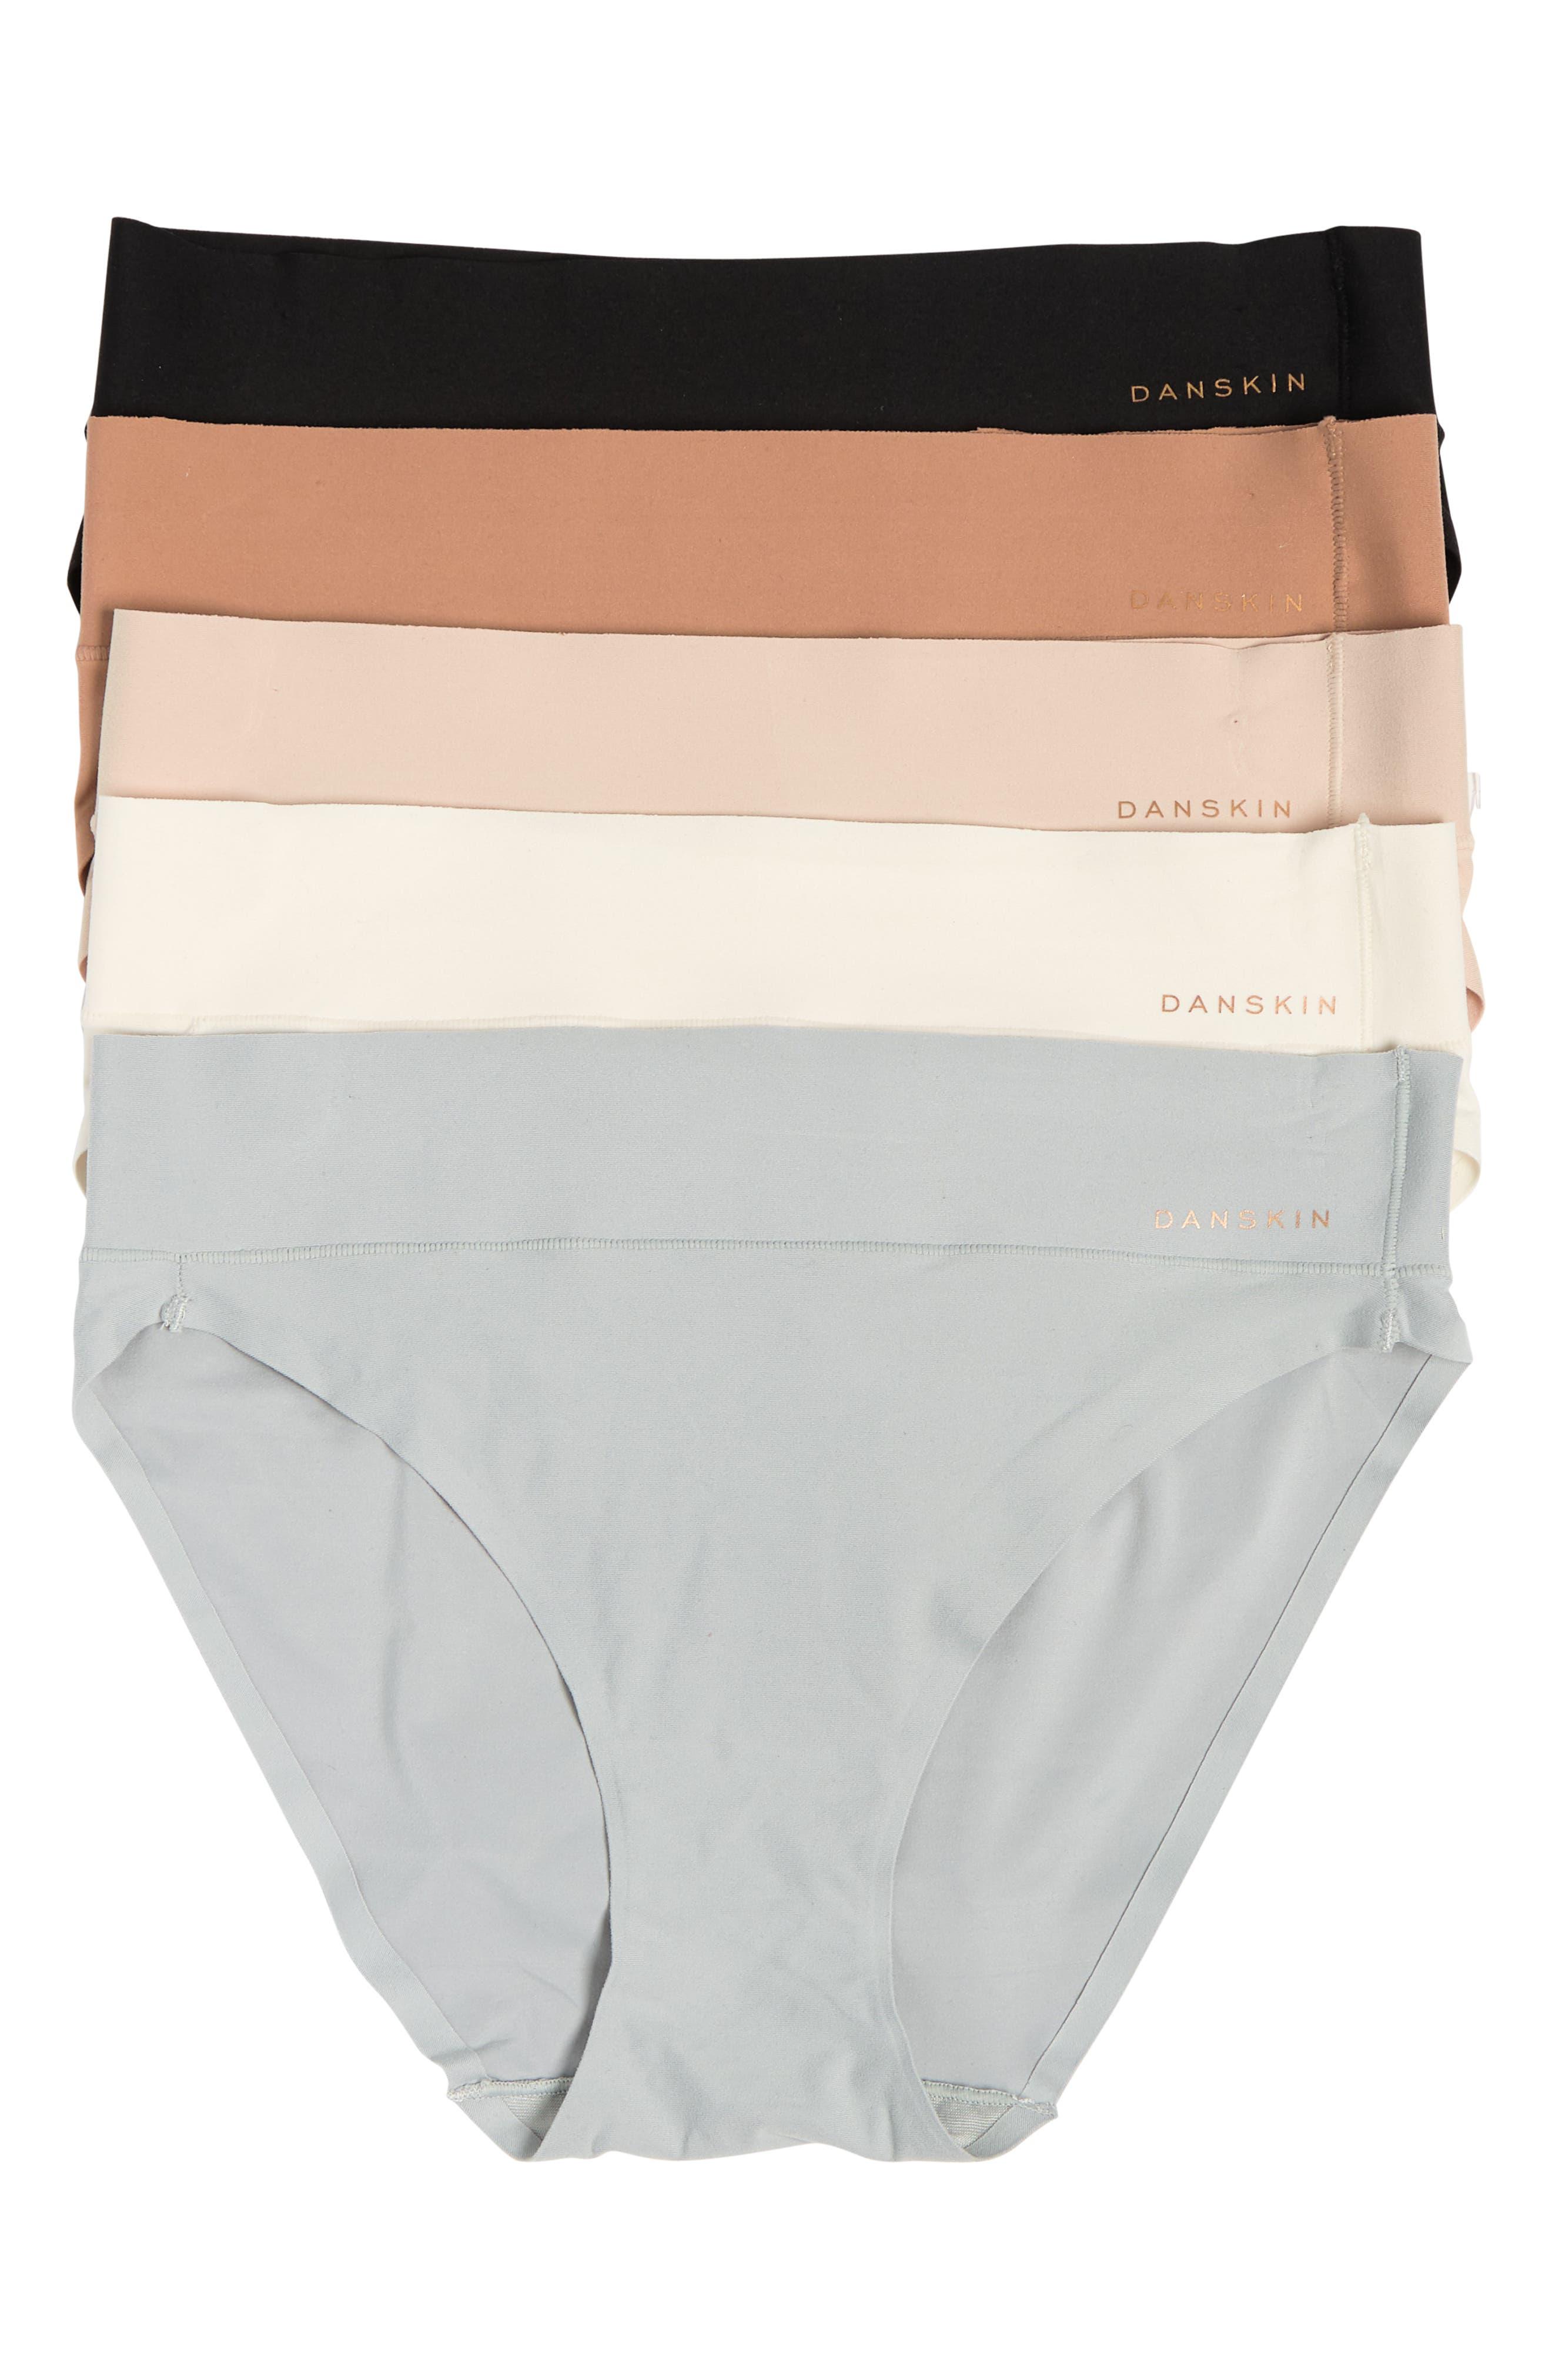 Danskin, Intimates & Sleepwear, Danskin Panty Pack